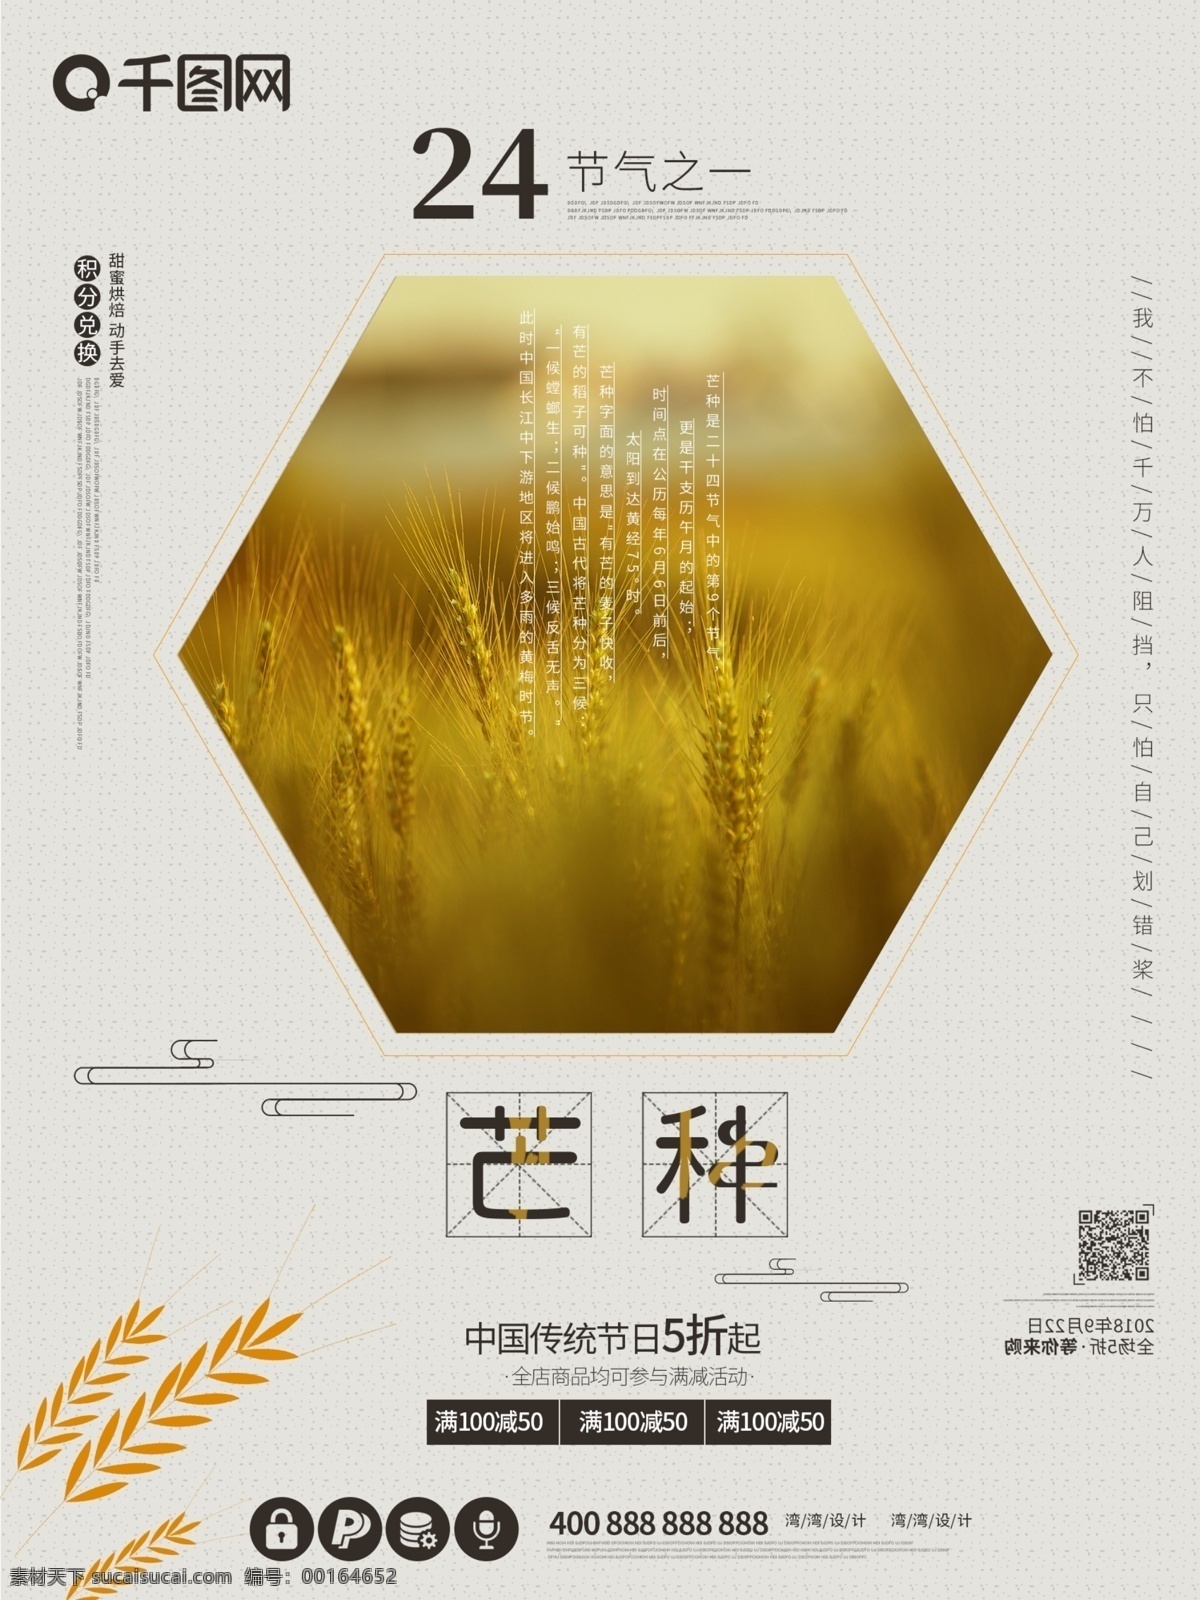 芒种 中国 传统 节气 原创 大气 黄色 海报 24节气之一 中国传统 节日 促销